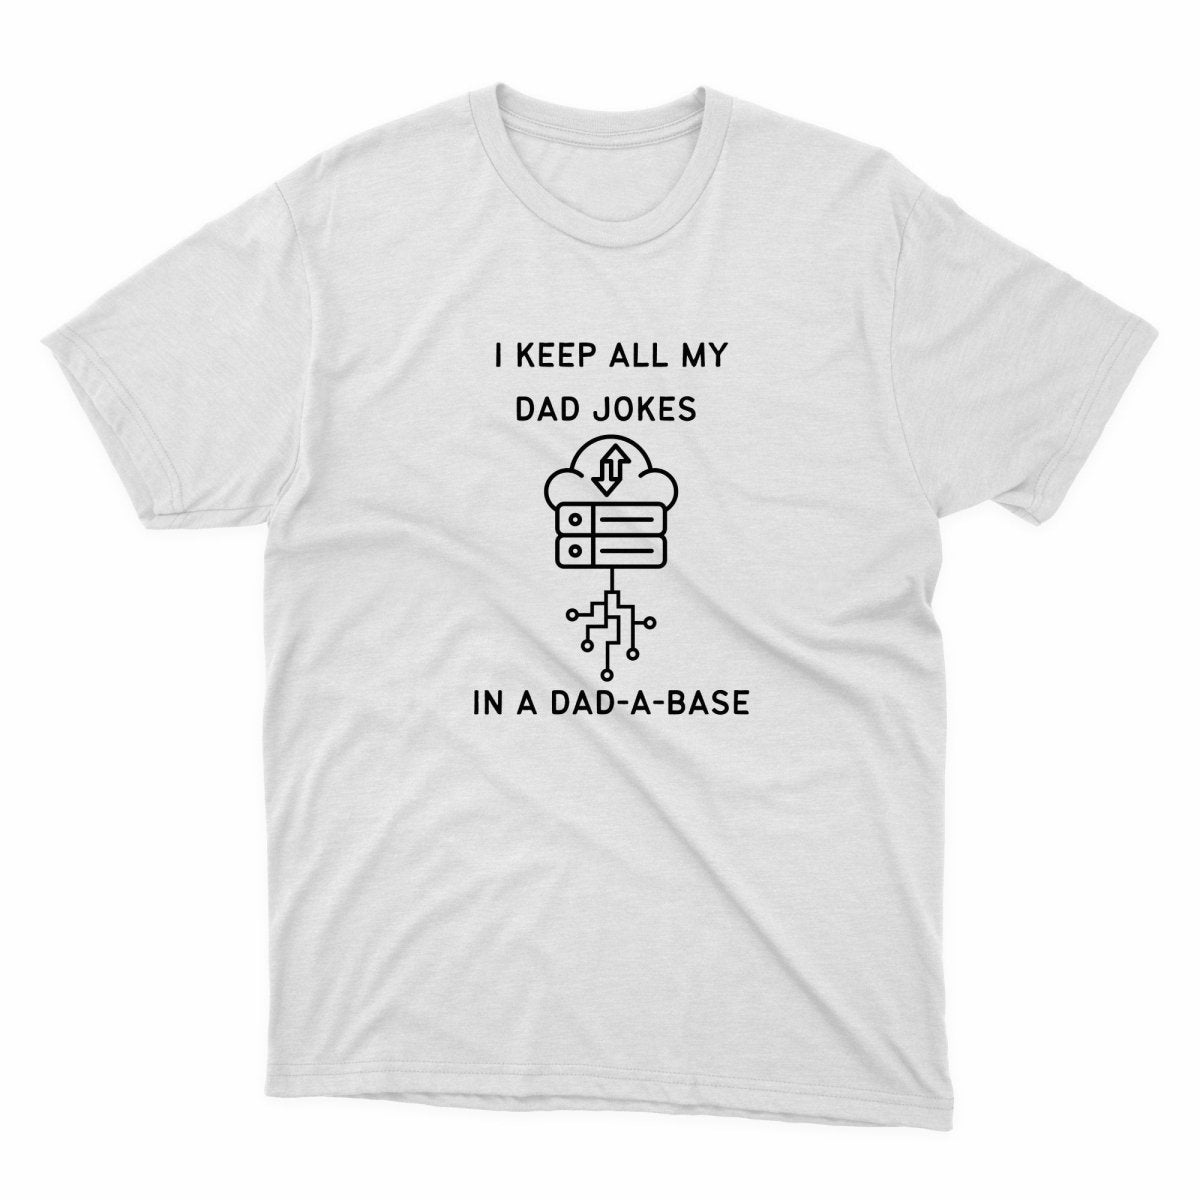 Dad A Base Shirt - stickerbullDad A Base ShirtShirtsPrintifystickerbull58289837728591959138WhiteSa white t - shirt that says i keep all my dad jones in a dad